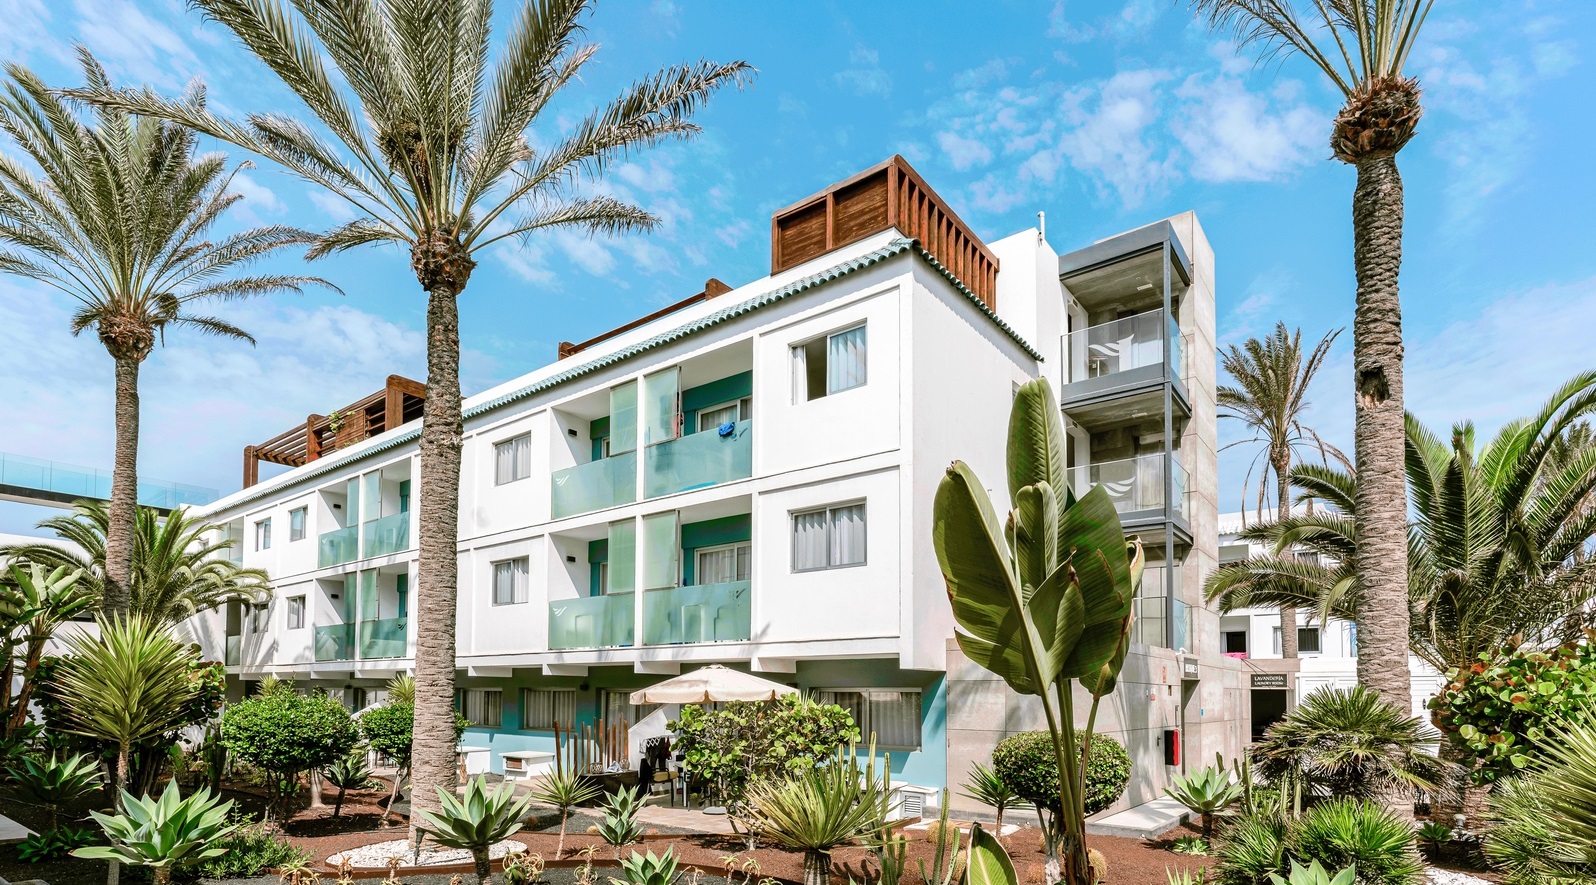 Inversión inmobiliaria en Fuerteventura: Municipios por rentabilidad